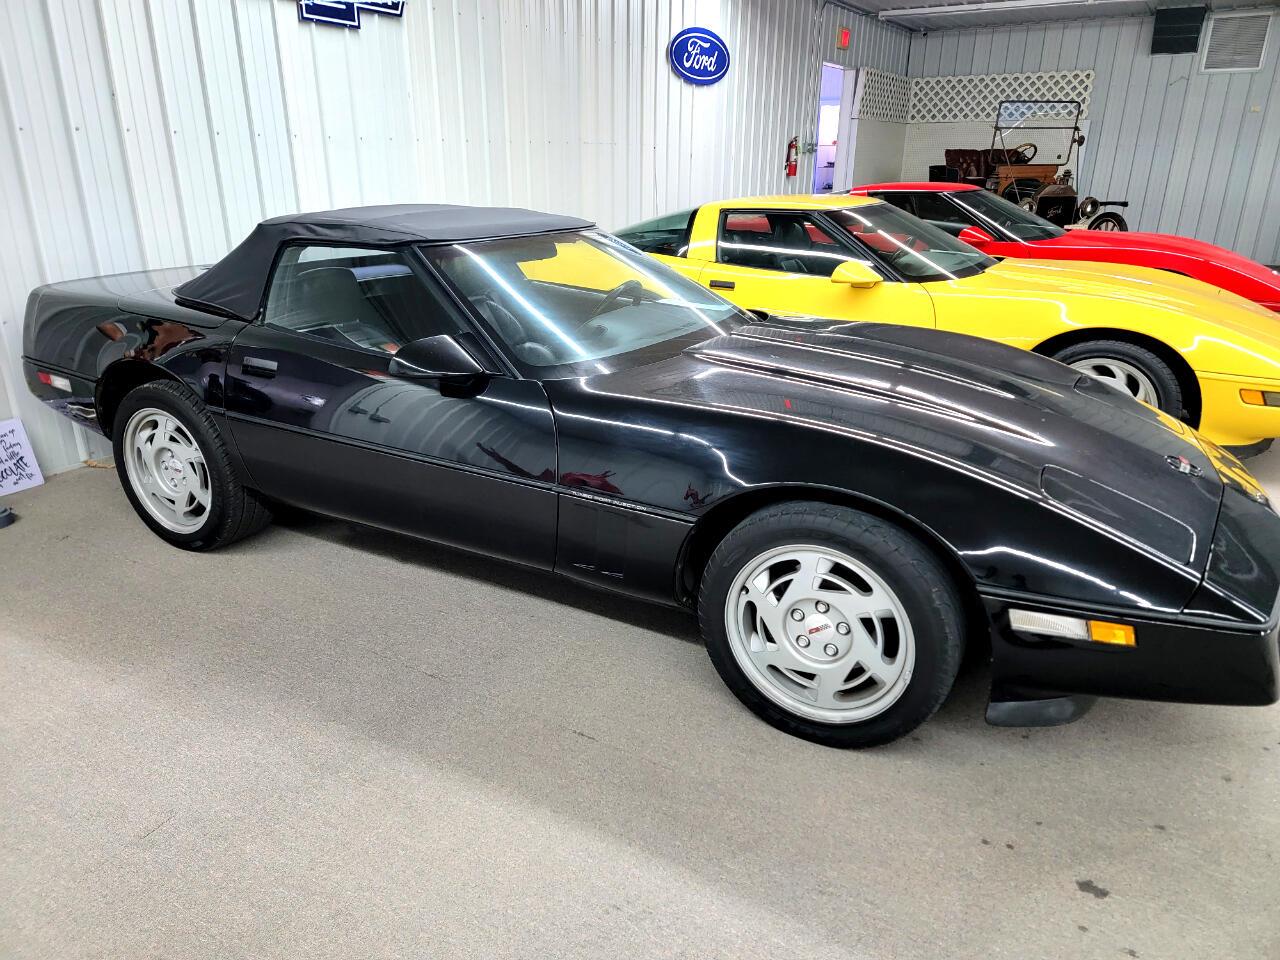 For Sale: 1990 Chevrolet Corvette in Nashville, Illinois for sale in Nashville, IL